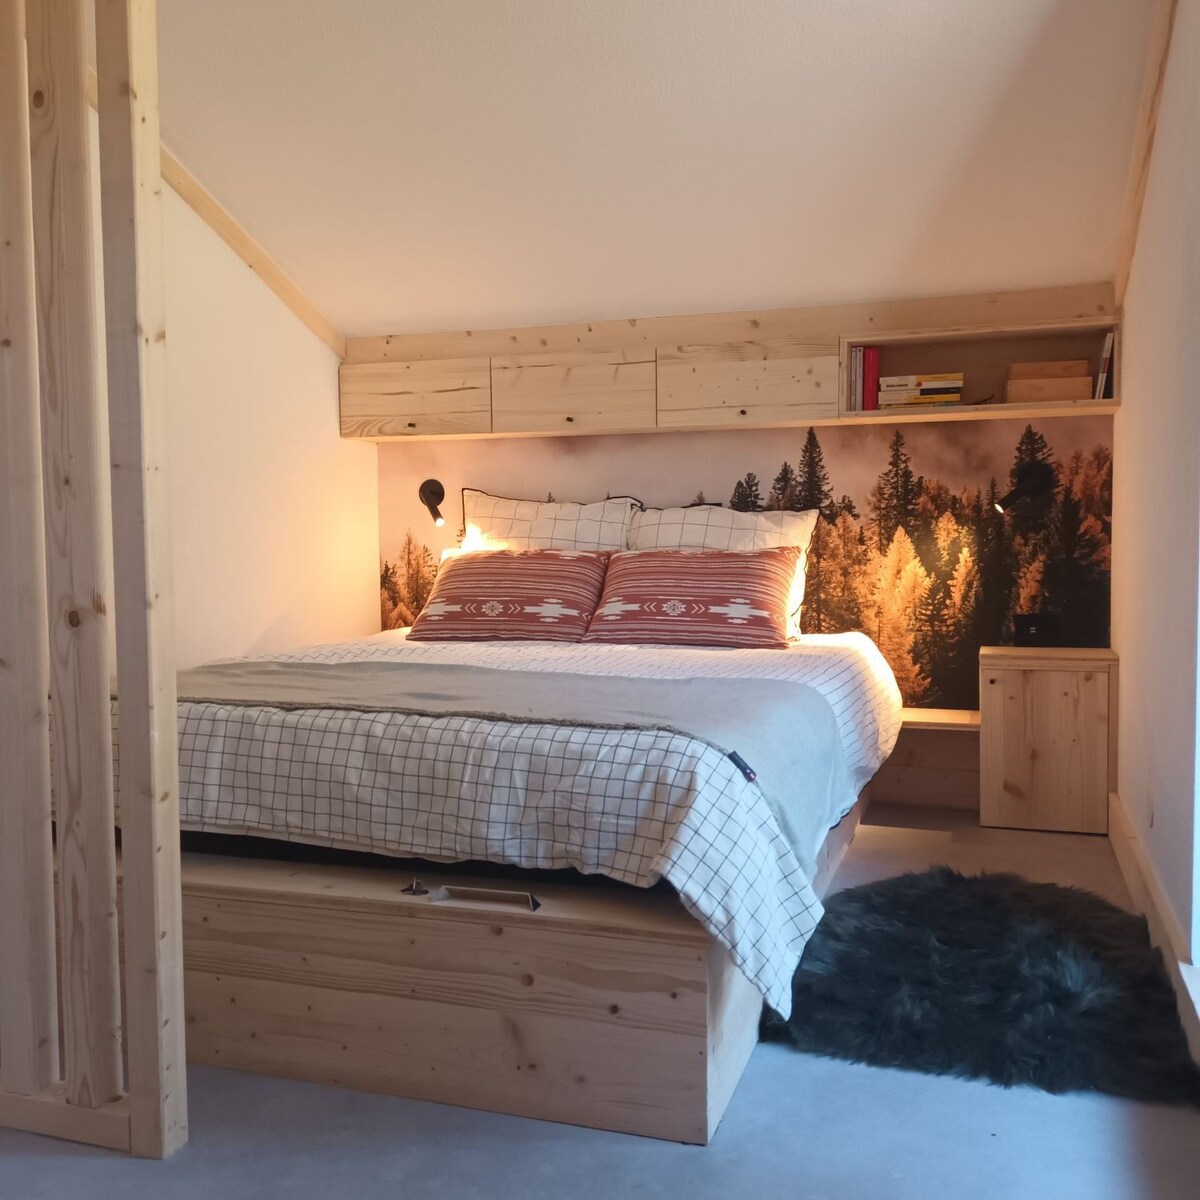 Kiadó lakások Les Gets területén – Airbnb - Auvergne-Rhône-Alpes,  Franciaország